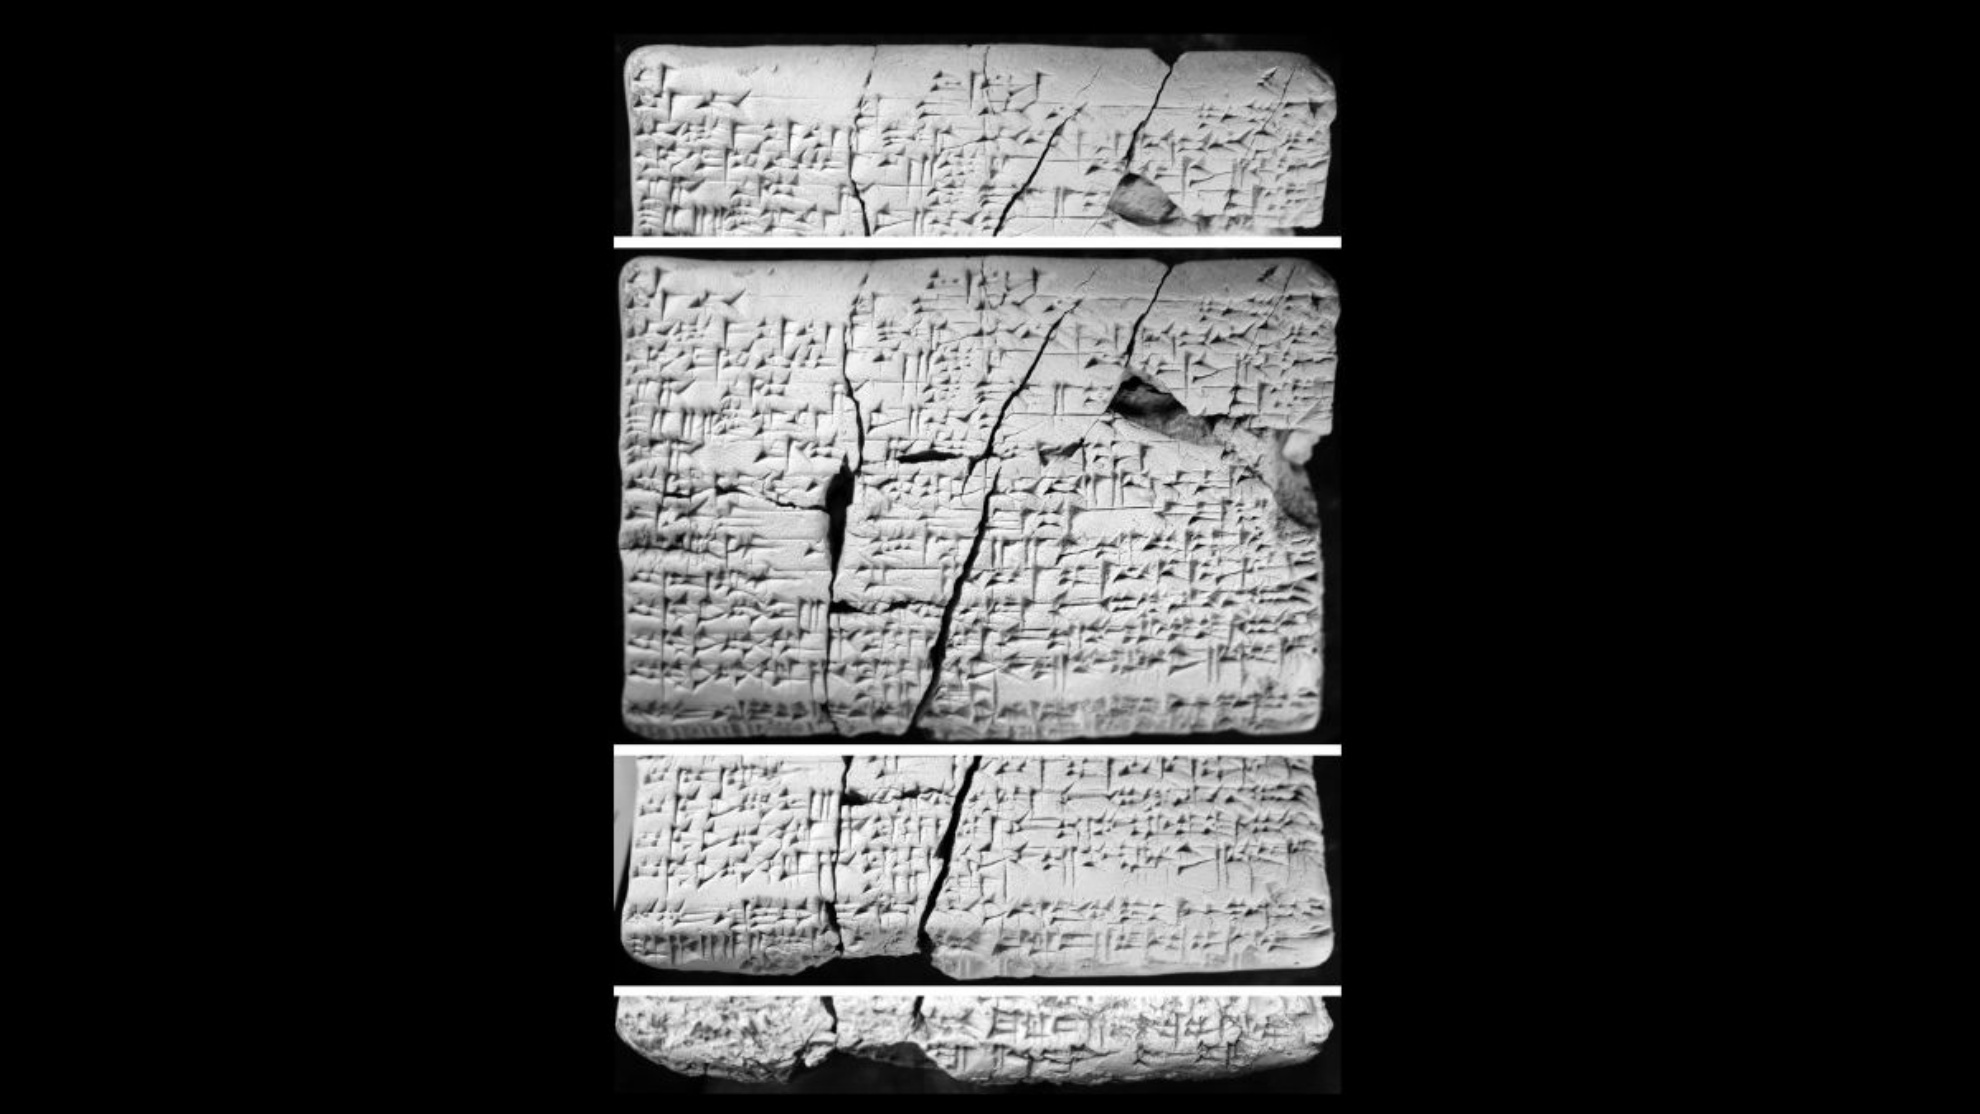 Table so bile najdene v Iraku pred približno 30 leti. Znanstveniki so jih začeli preučevati leta 2016 in odkrili, da vsebujejo podrobnosti v akadščini o "izgubljenem" amoritskem jeziku.